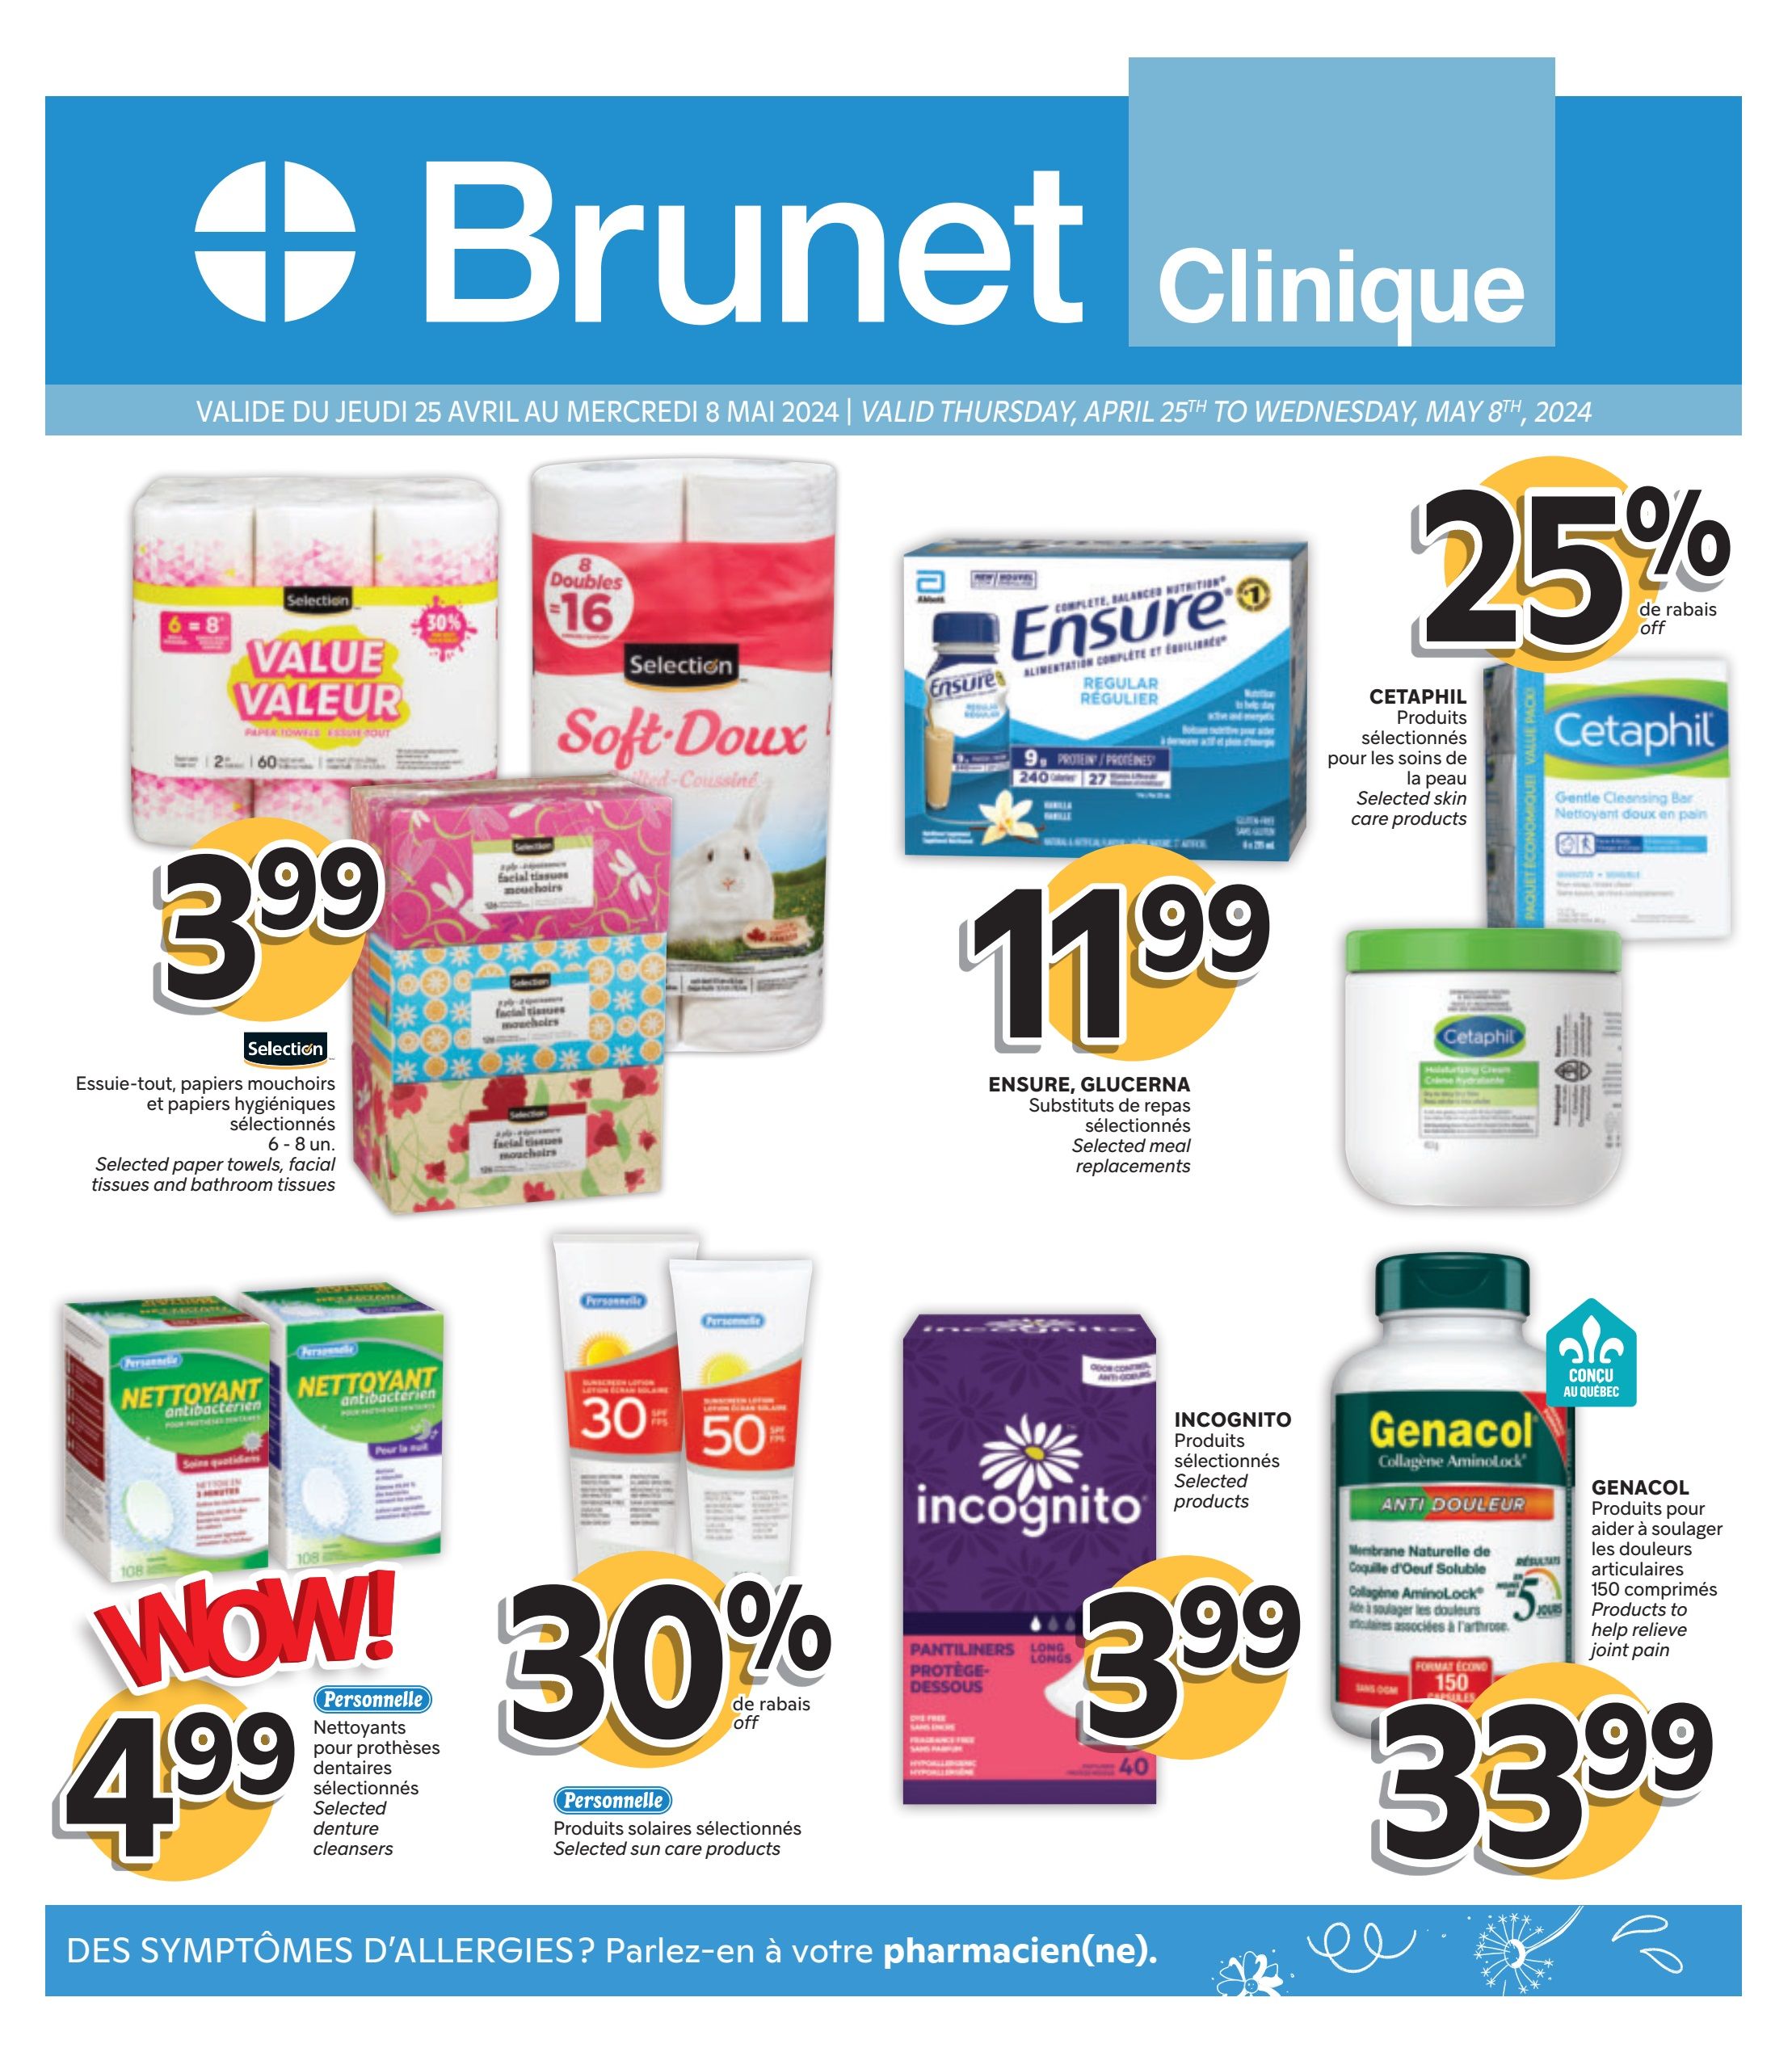 Brunet - Clinical - 2 Weeks of Savings